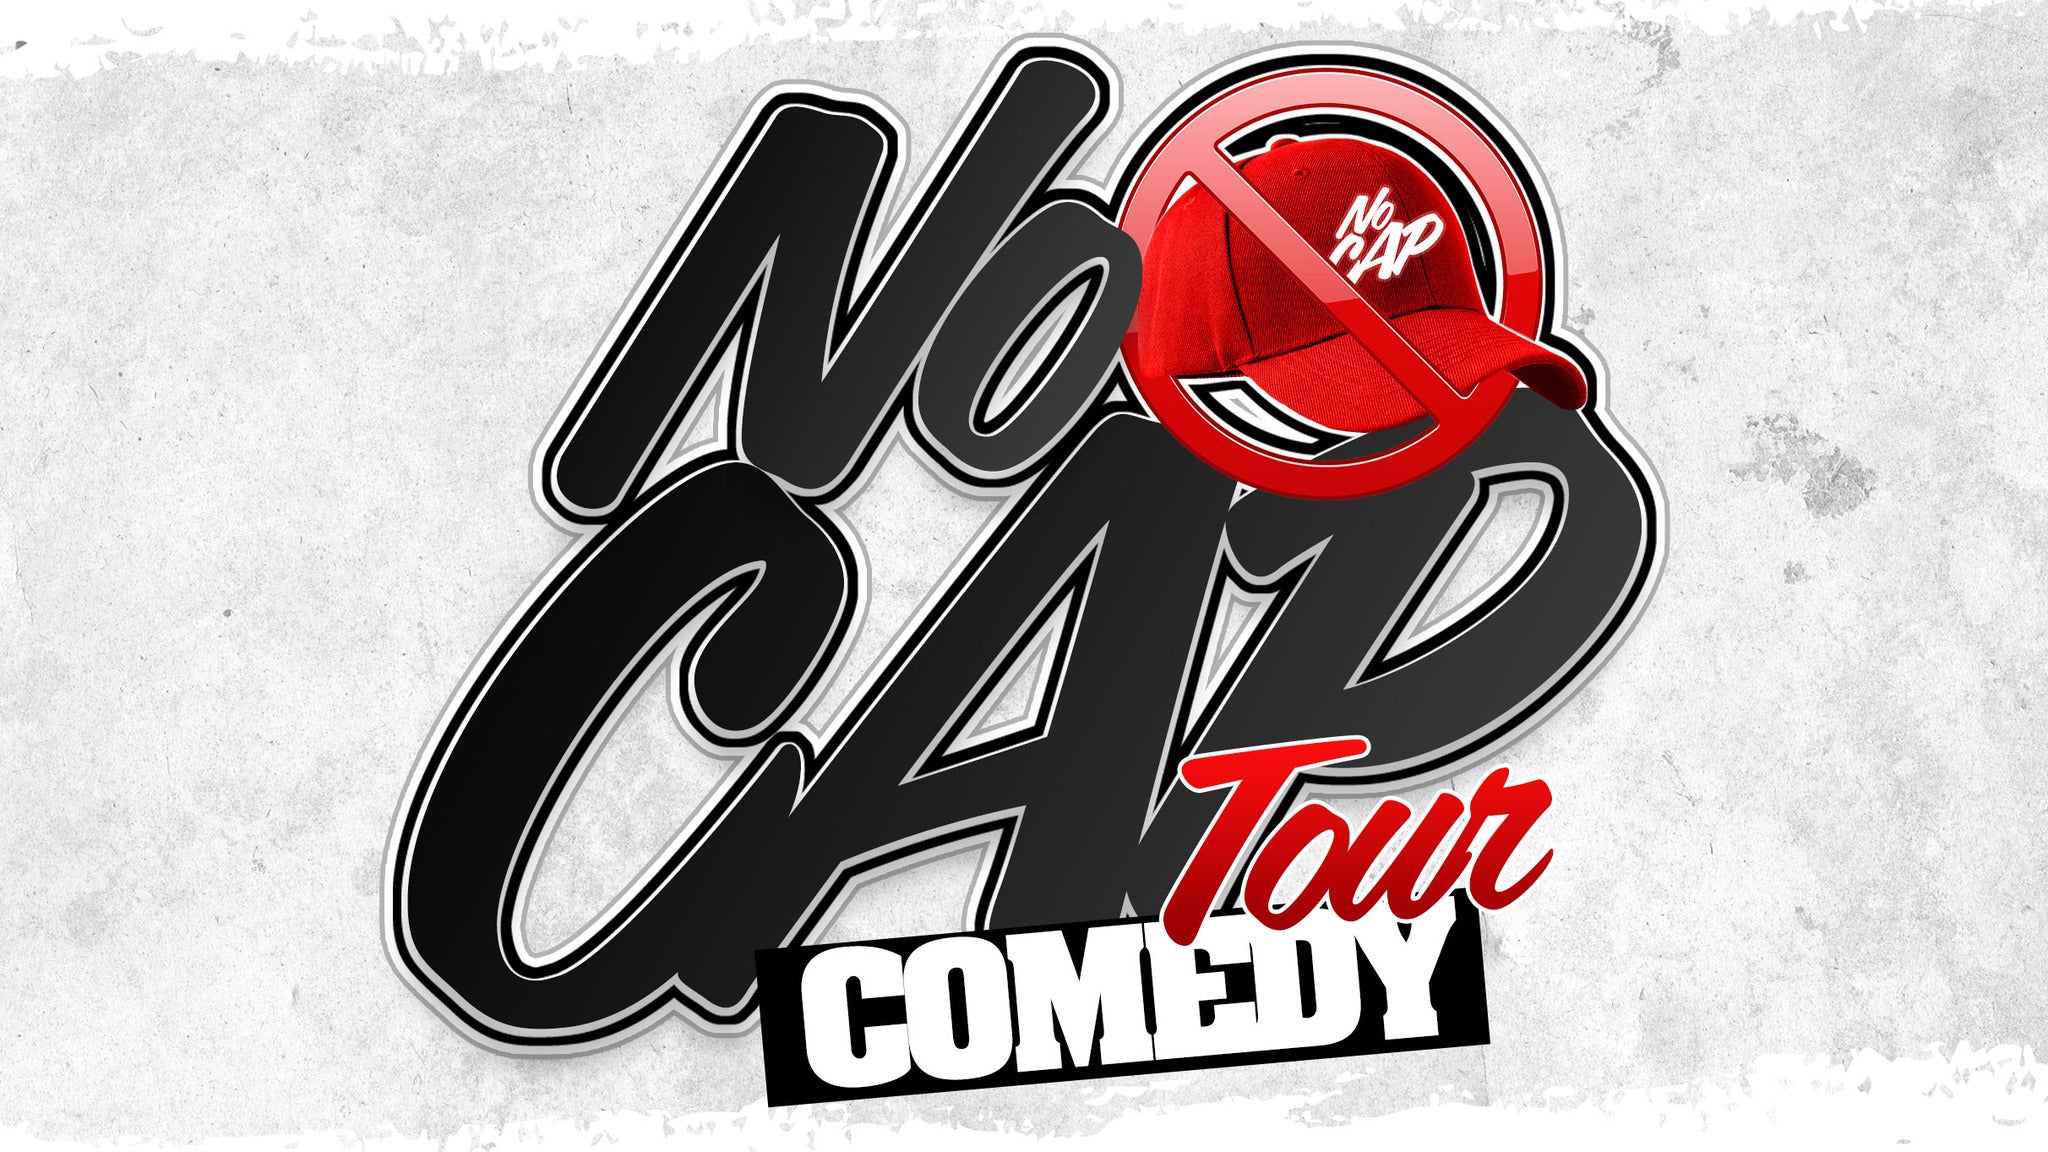 No Cap Comedy Tour at Texas Trust CU Theatre